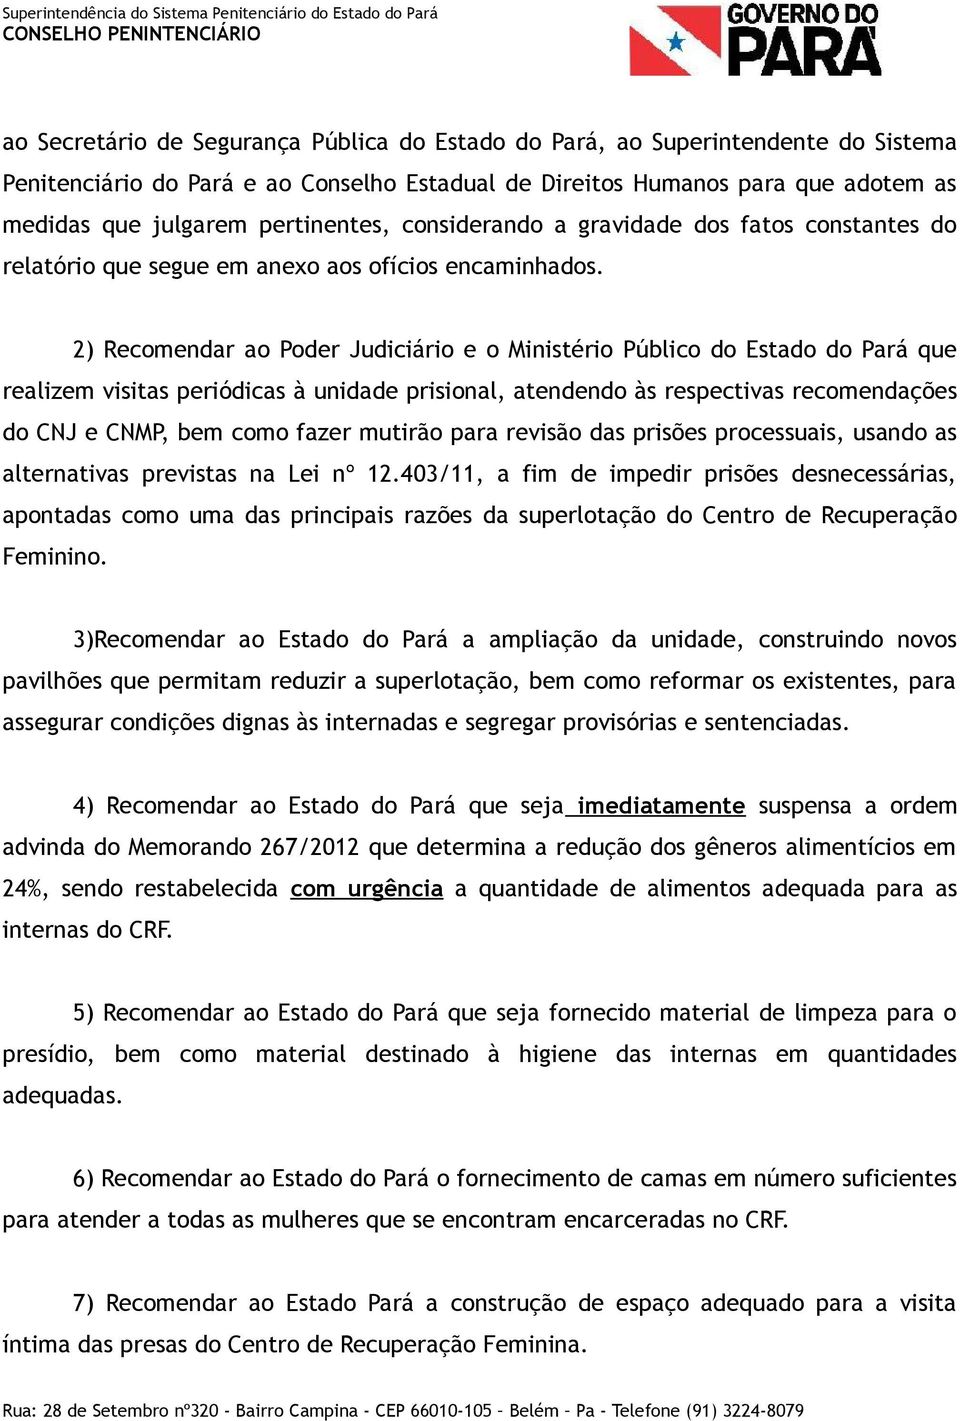 2) Recomendar ao Poder Judiciário e o Ministério Público do Estado do Pará que realizem visitas periódicas à unidade prisional, atendendo às respectivas recomendações do CNJ e CNMP, bem como fazer